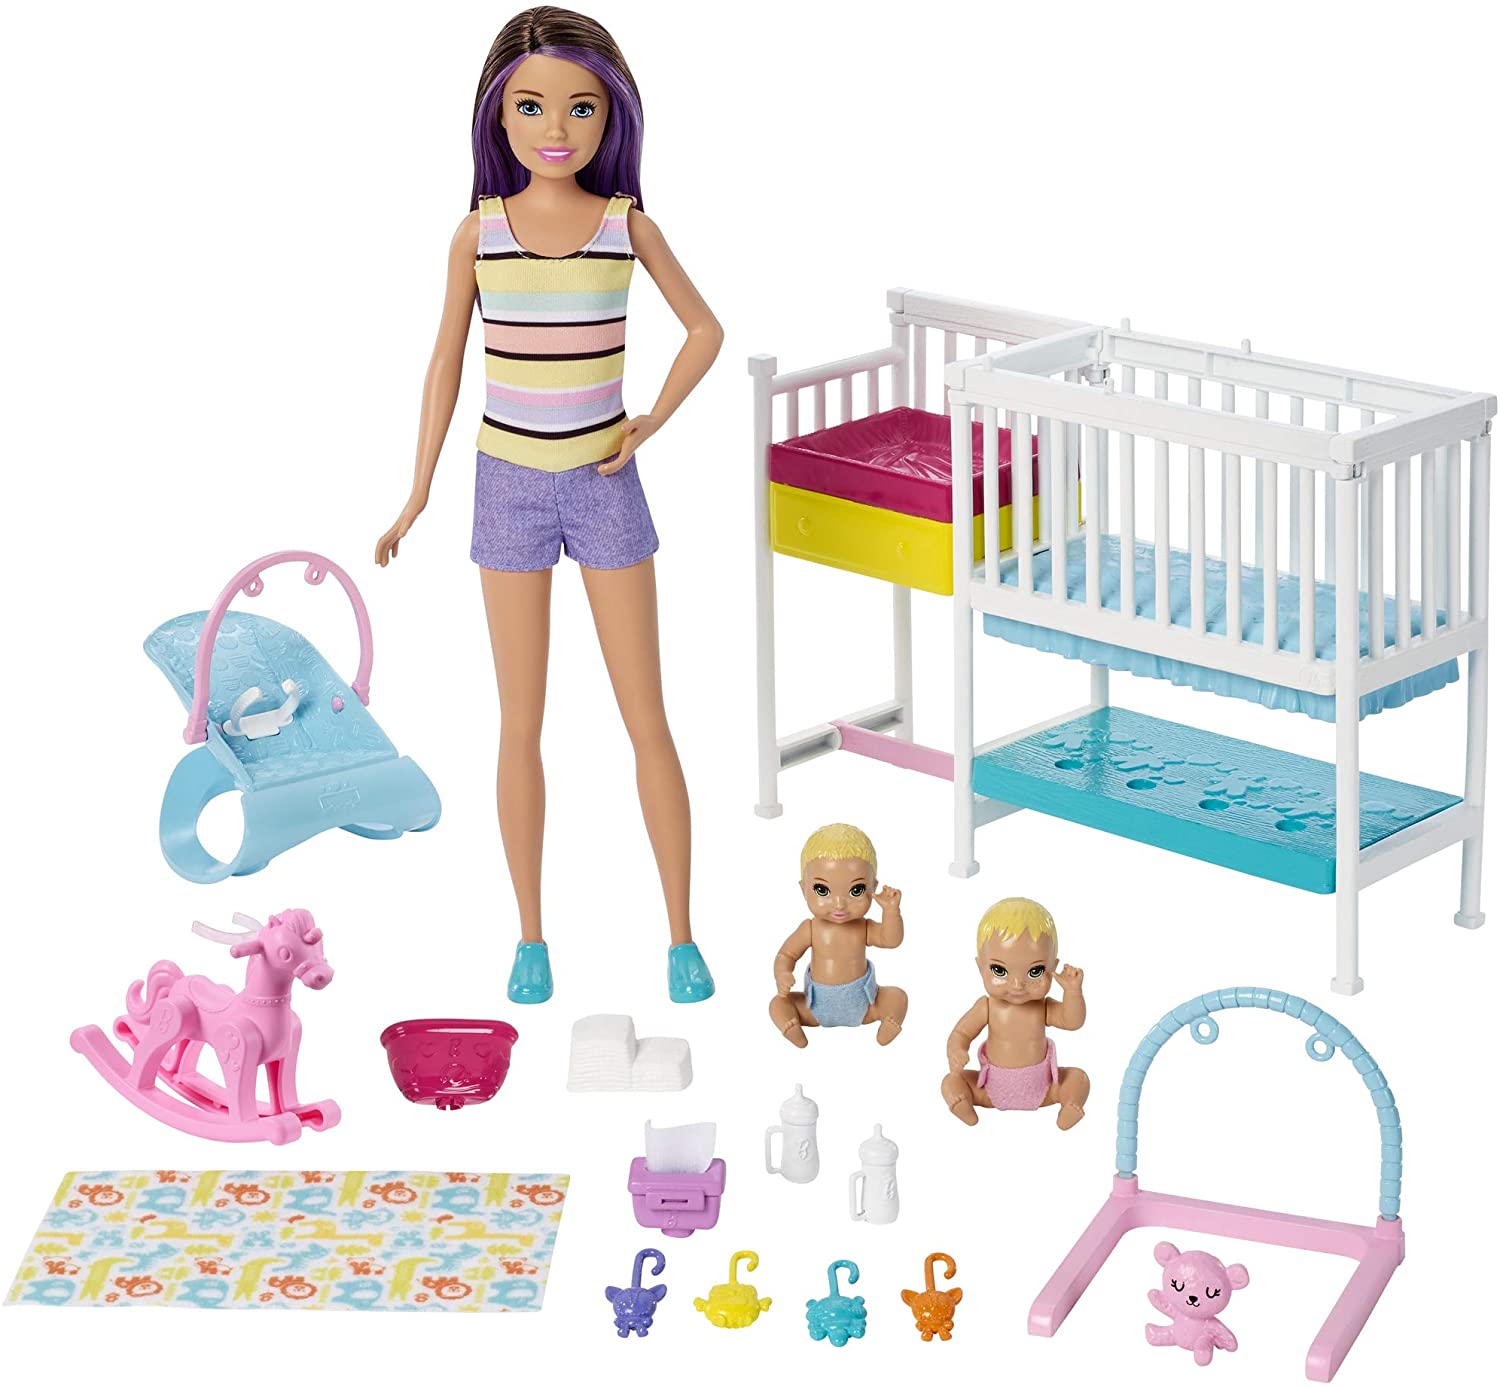 Boneca Barbie Skipper Playset Escola De Bebês - Mattel GFL38